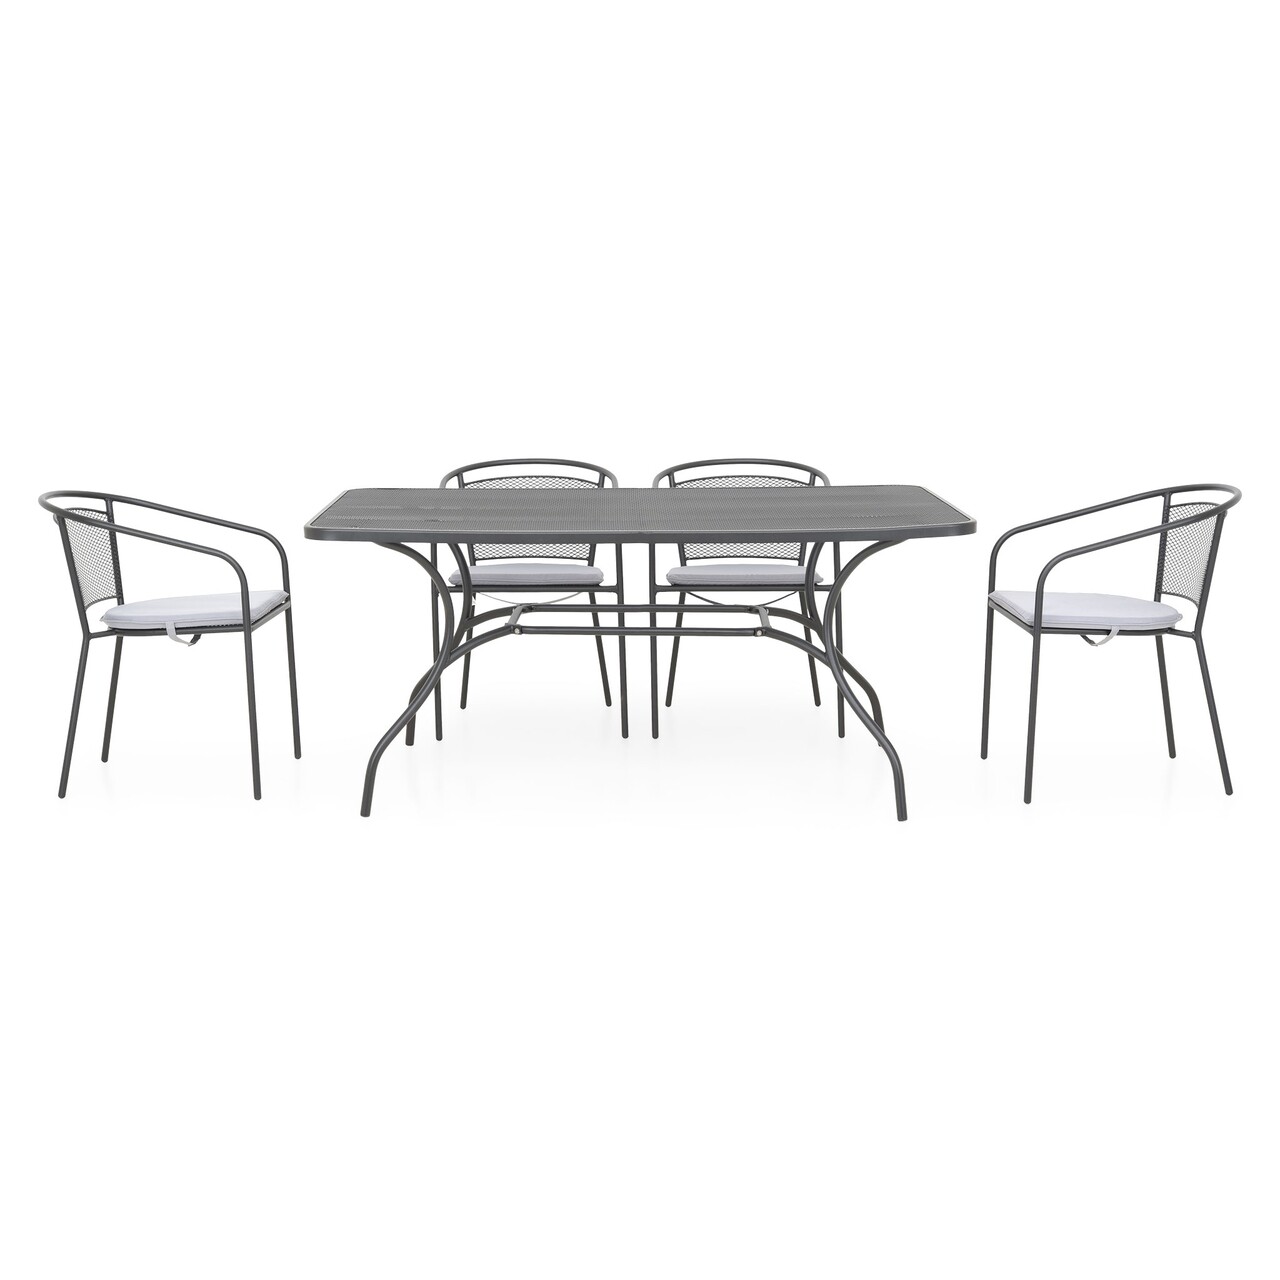 Maison berlin kerti/terasz bútor szett, 4 székkel + asztal, acél, fekete/szürke